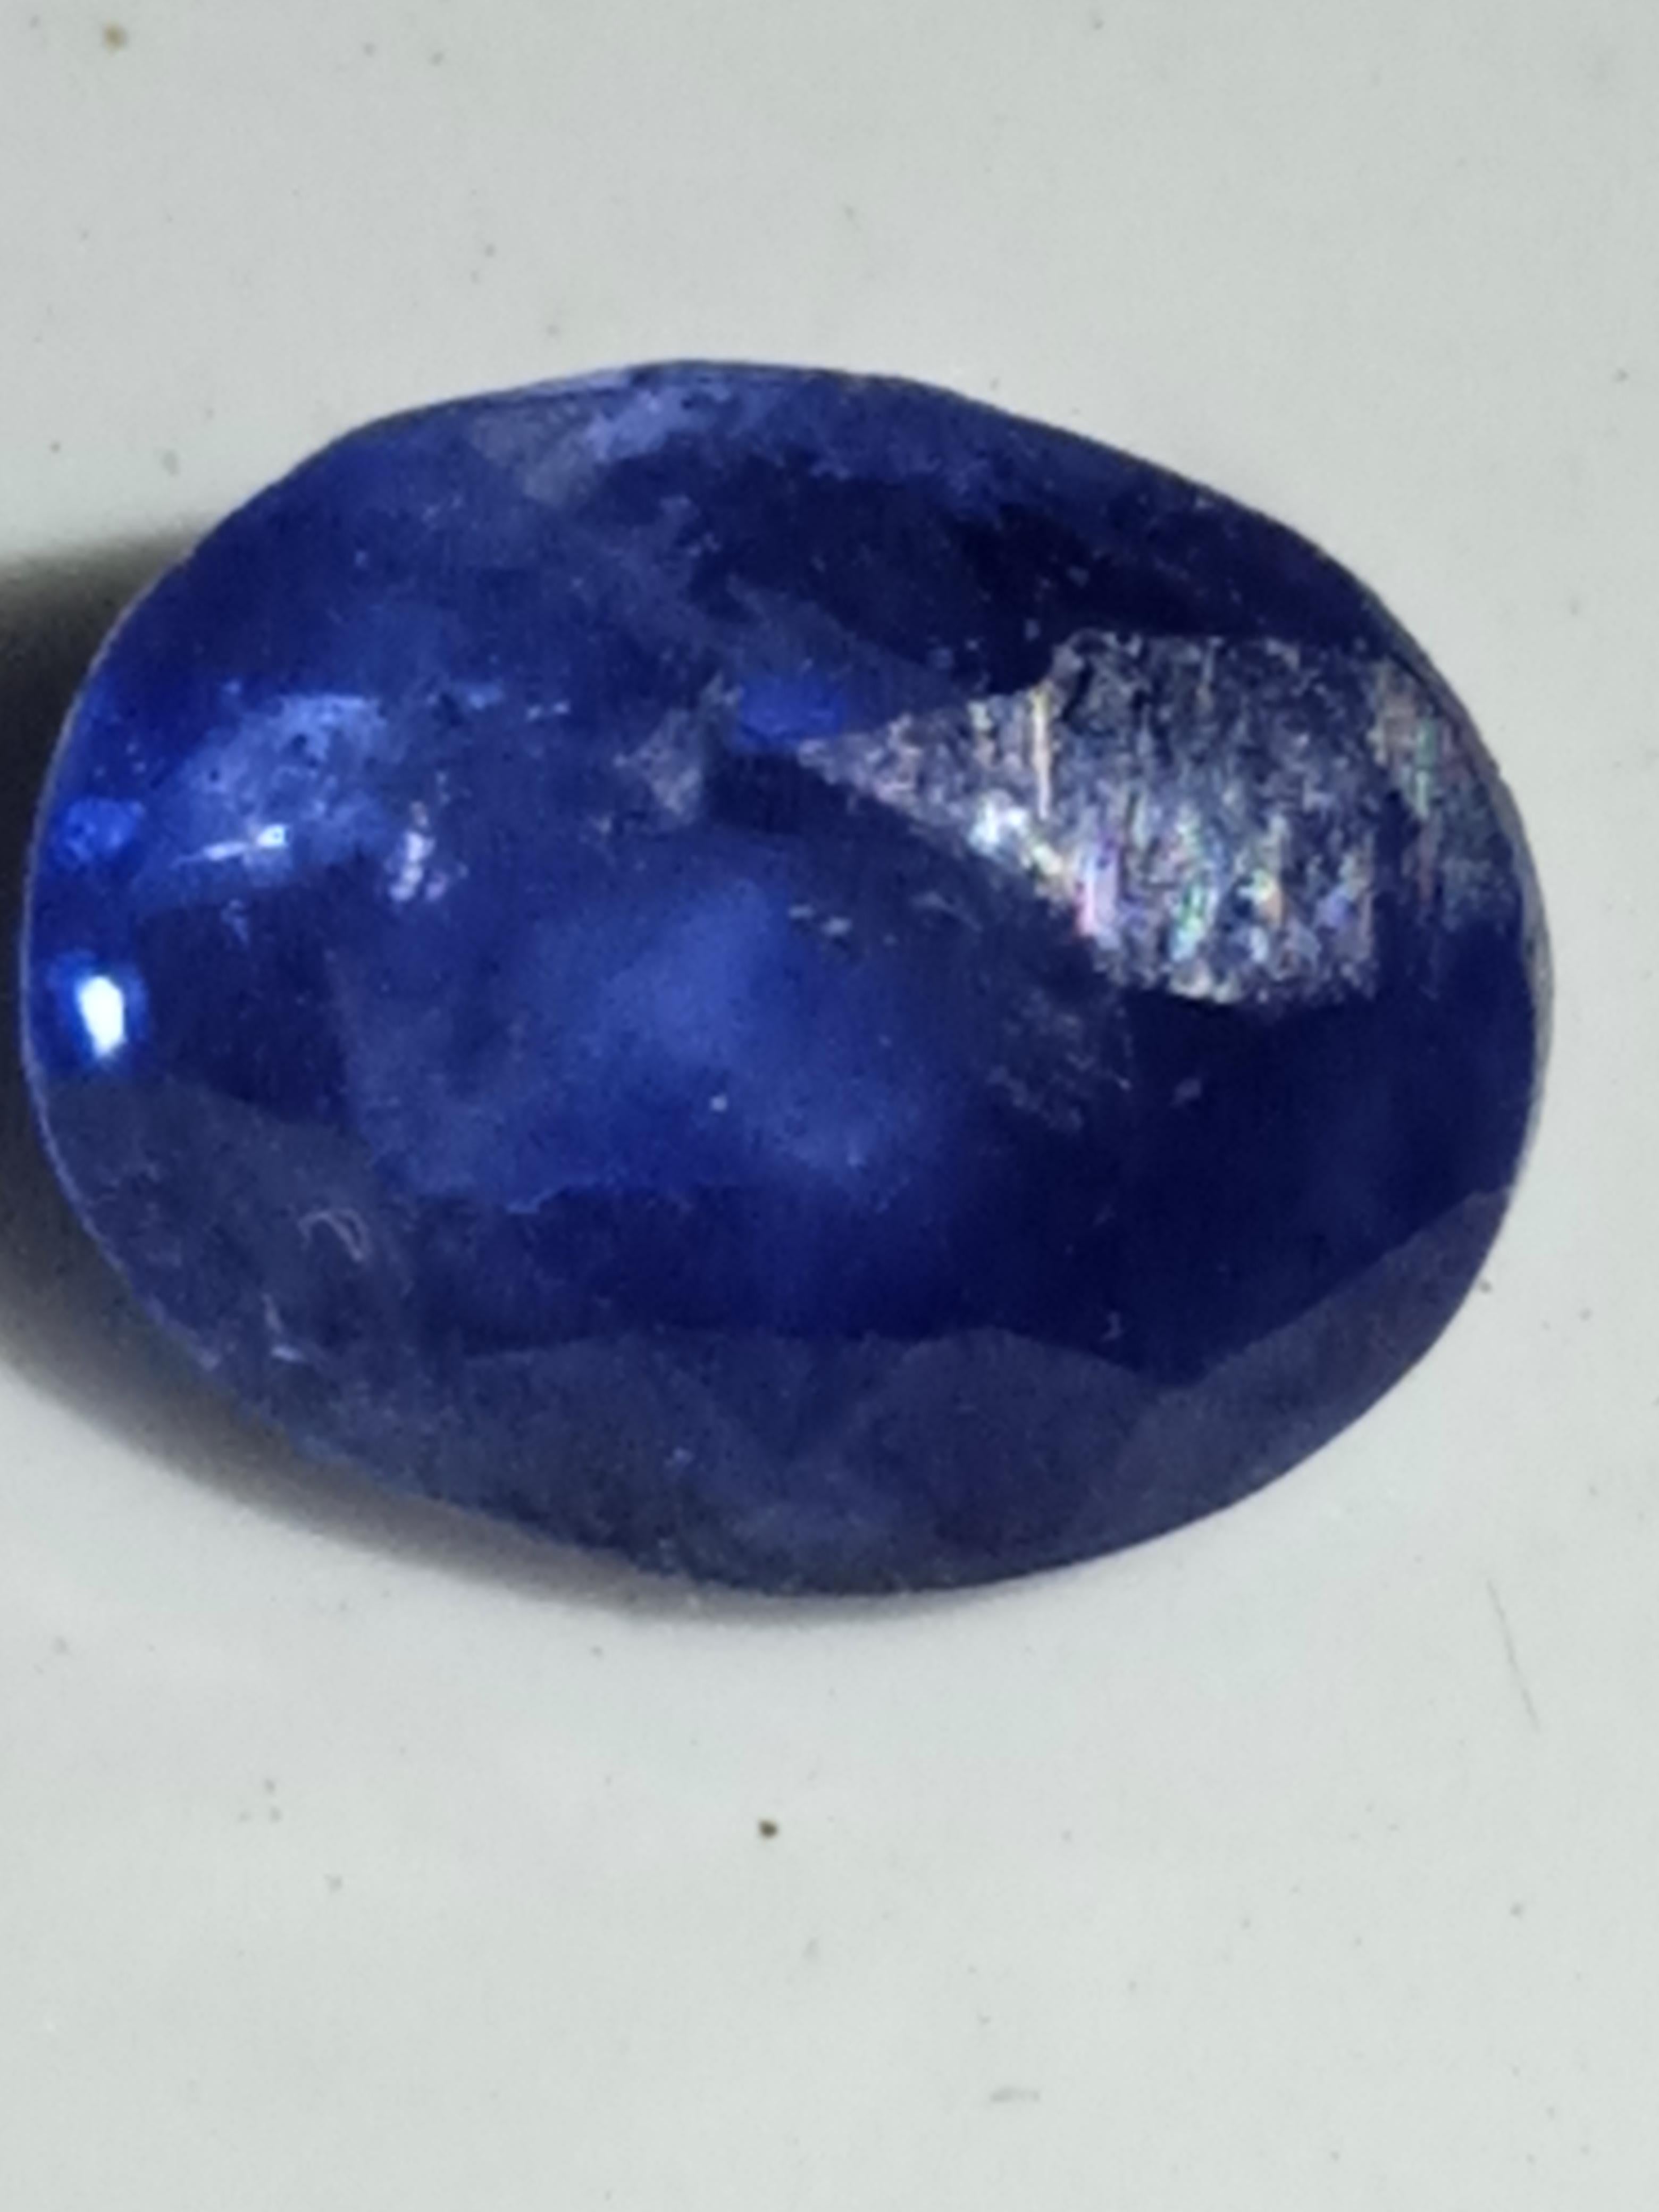 Ce magnifique saphir bleu de forme ovale pèse 1,50 carat et provient du Sri Lanka. La pierre précieuse présente une excellente qualité de taille et une clarté irréprochable. 

Il s'agit d'un saphir naturel qui n'a été ni traité ni chauffé de quelque